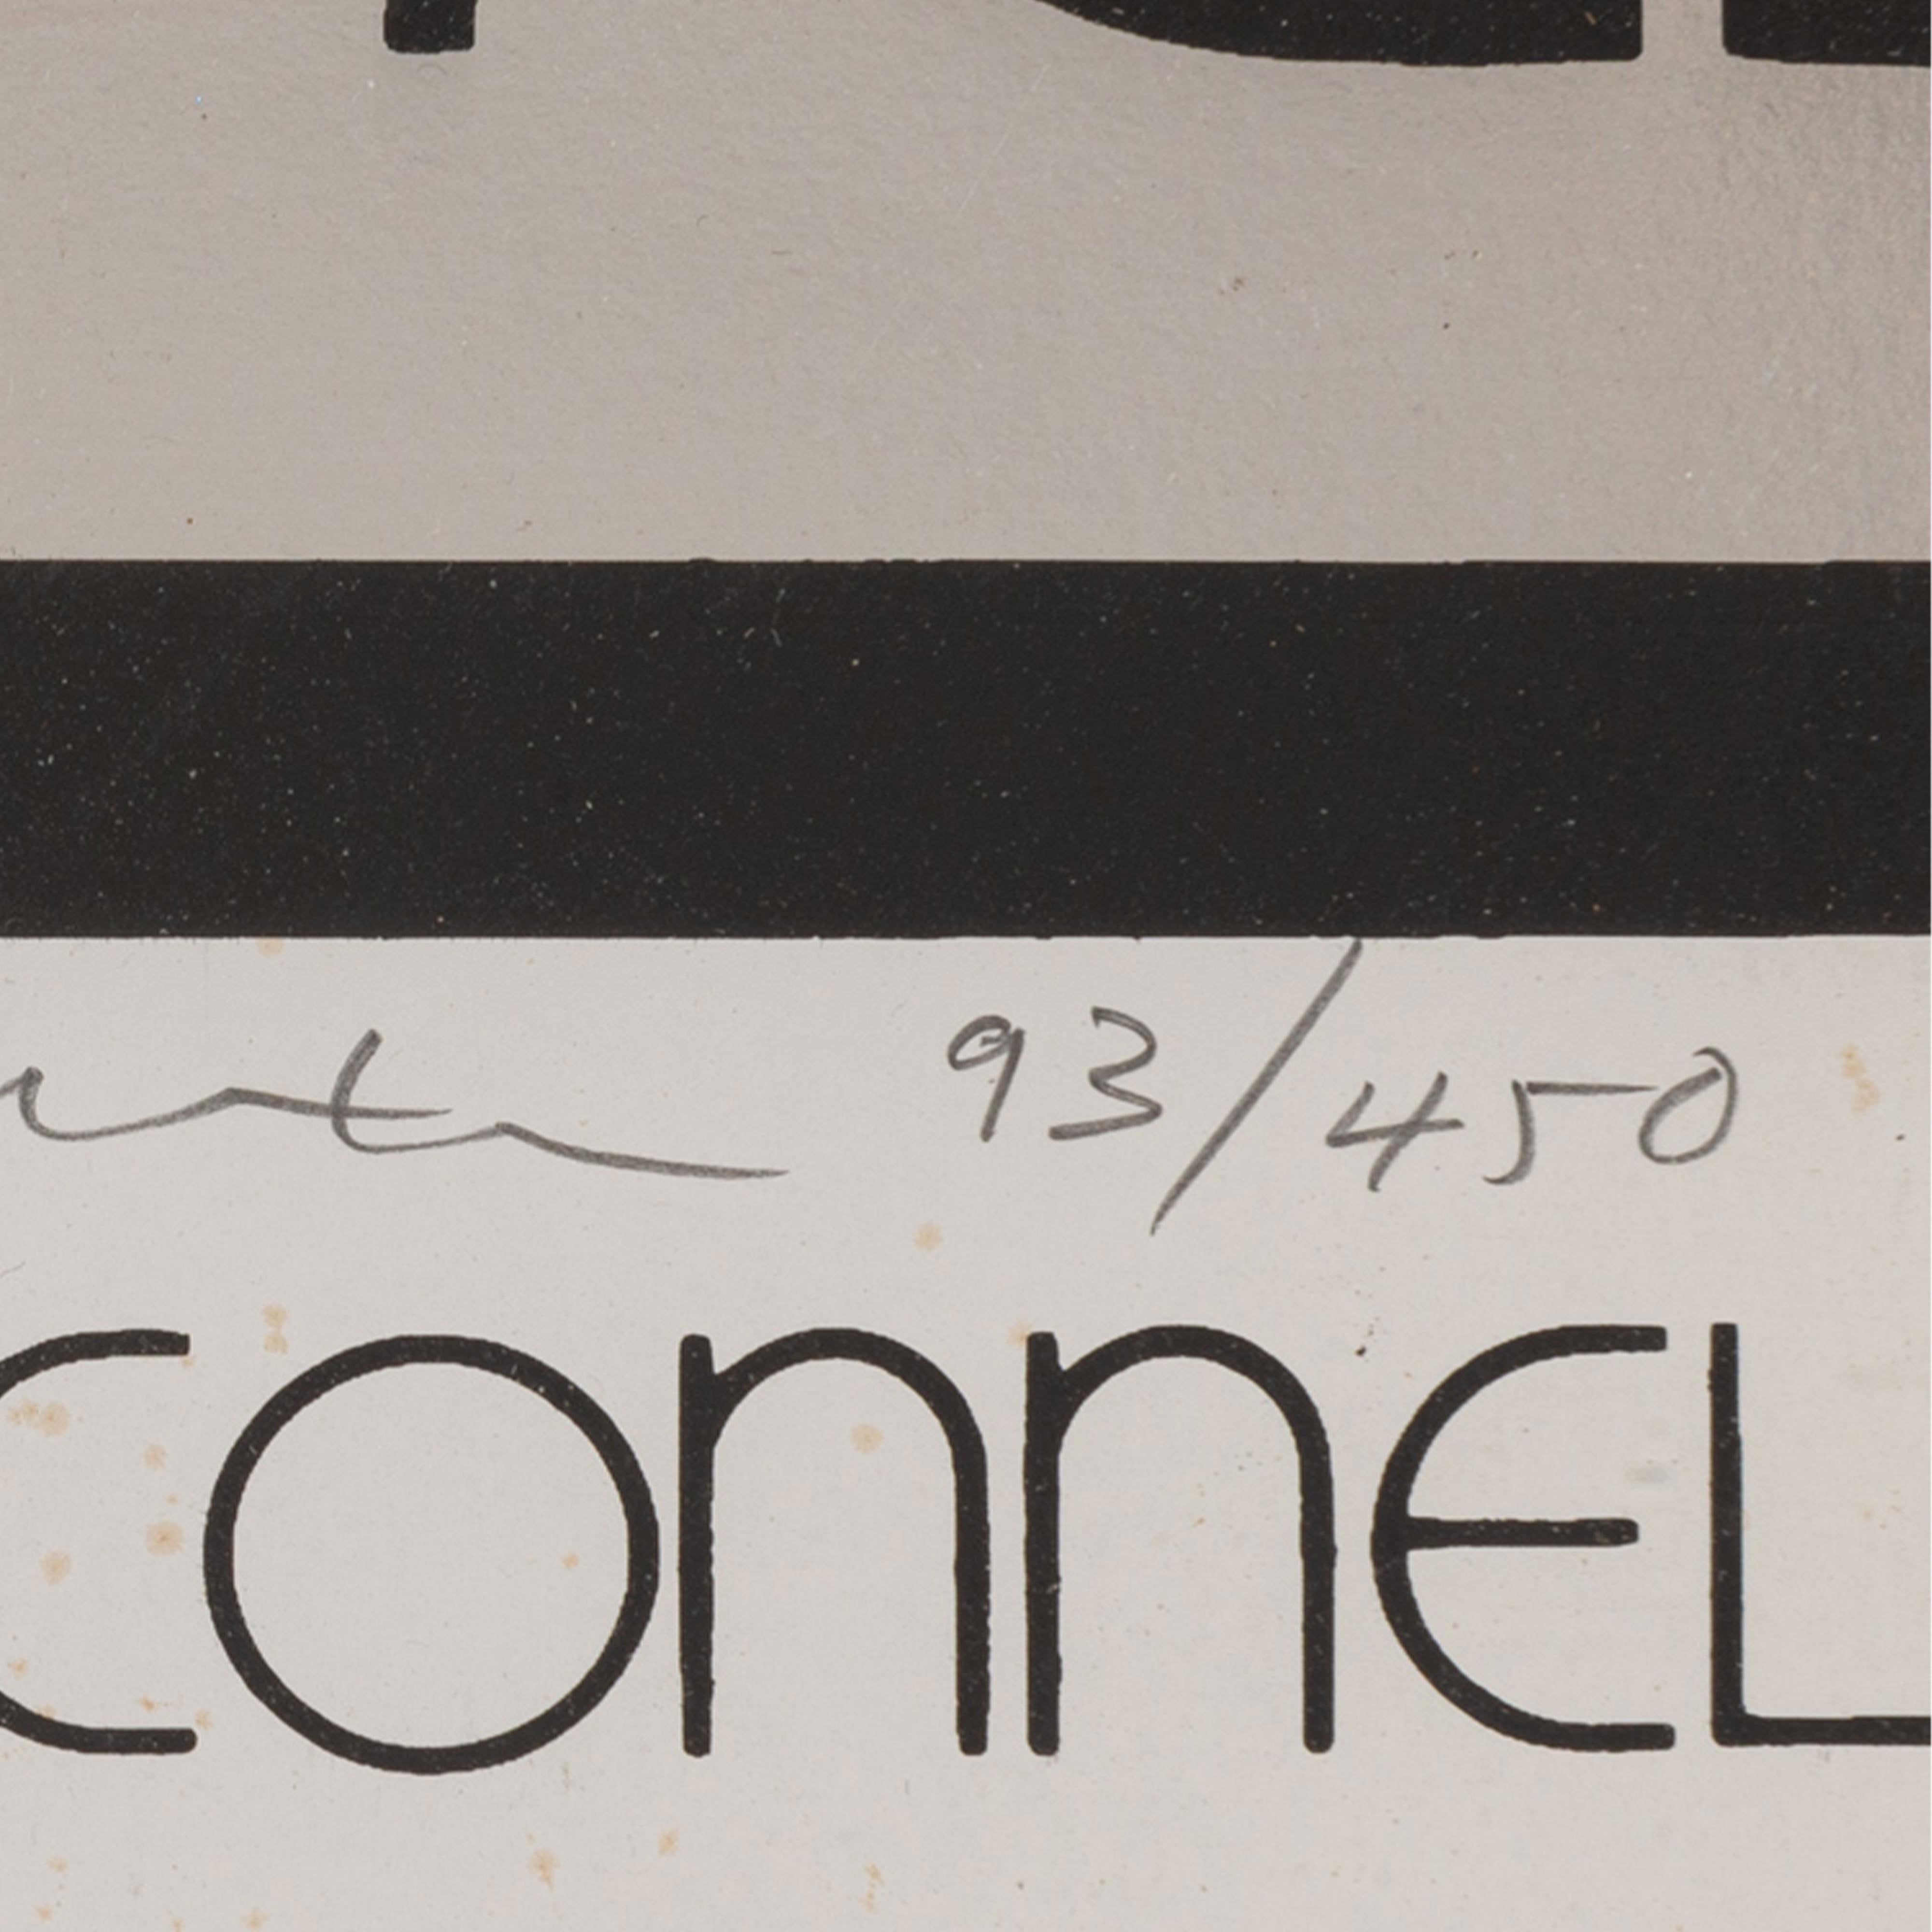 Merton of the movies, 1968 par Roy Lichtenstein.

L'œuvre est une sérigraphie sur papier argentique, 76 × 51 × 0,2 cm, édition 93/450.

Littérature : 

Co-publié par le Lincoln Center/List Poster and Print Program et H.K.L. Ltd, New York et